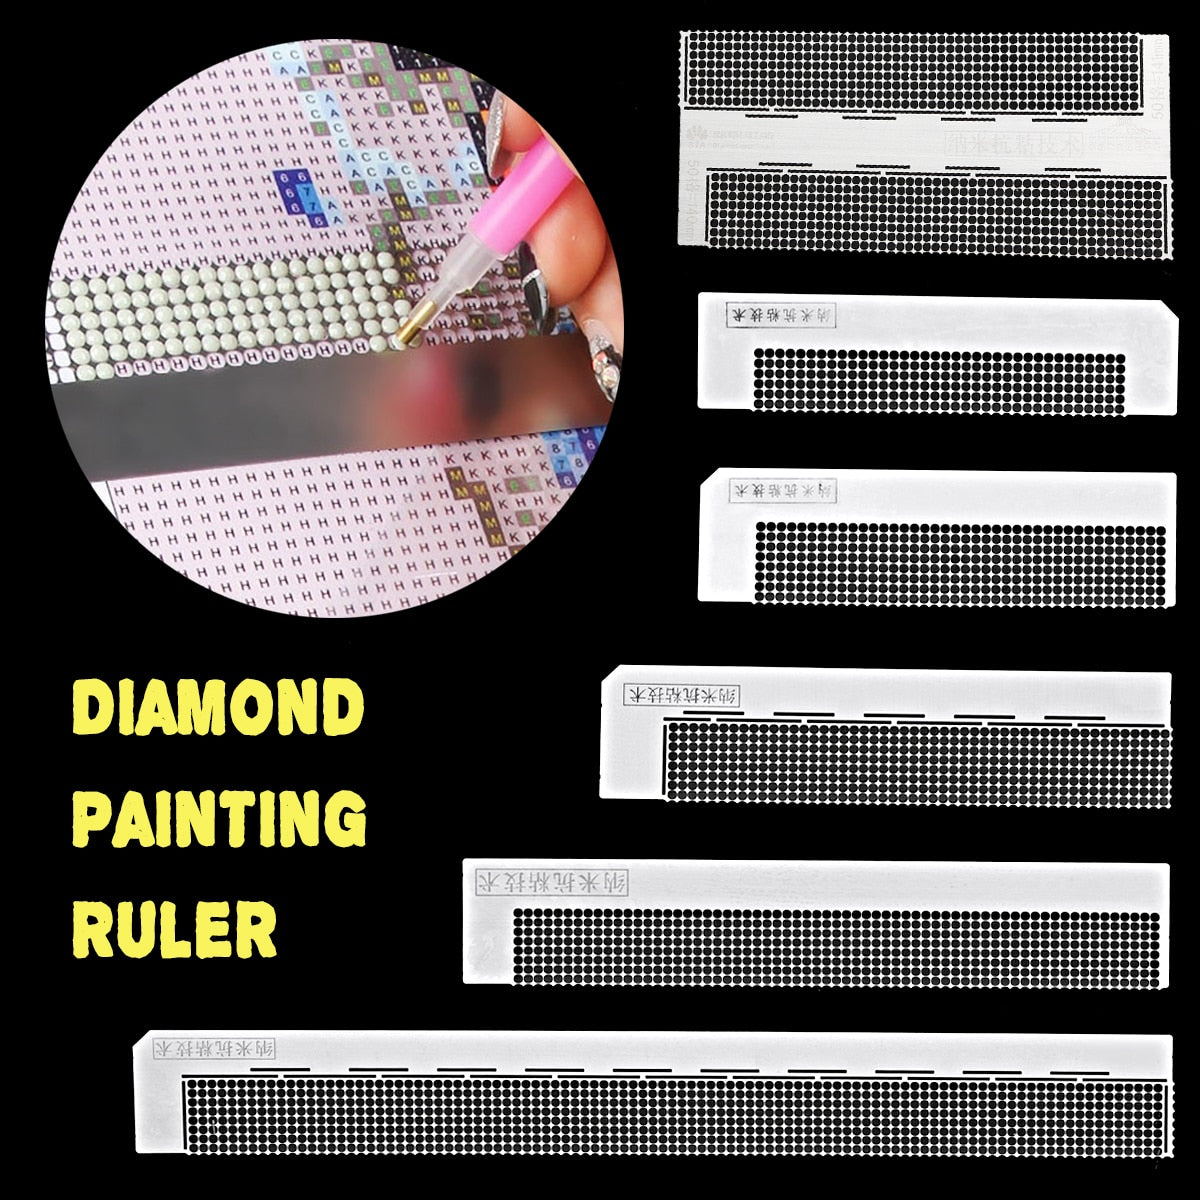 Anti stick Ruler Tool for Diamond Painting – All Diamond Painting